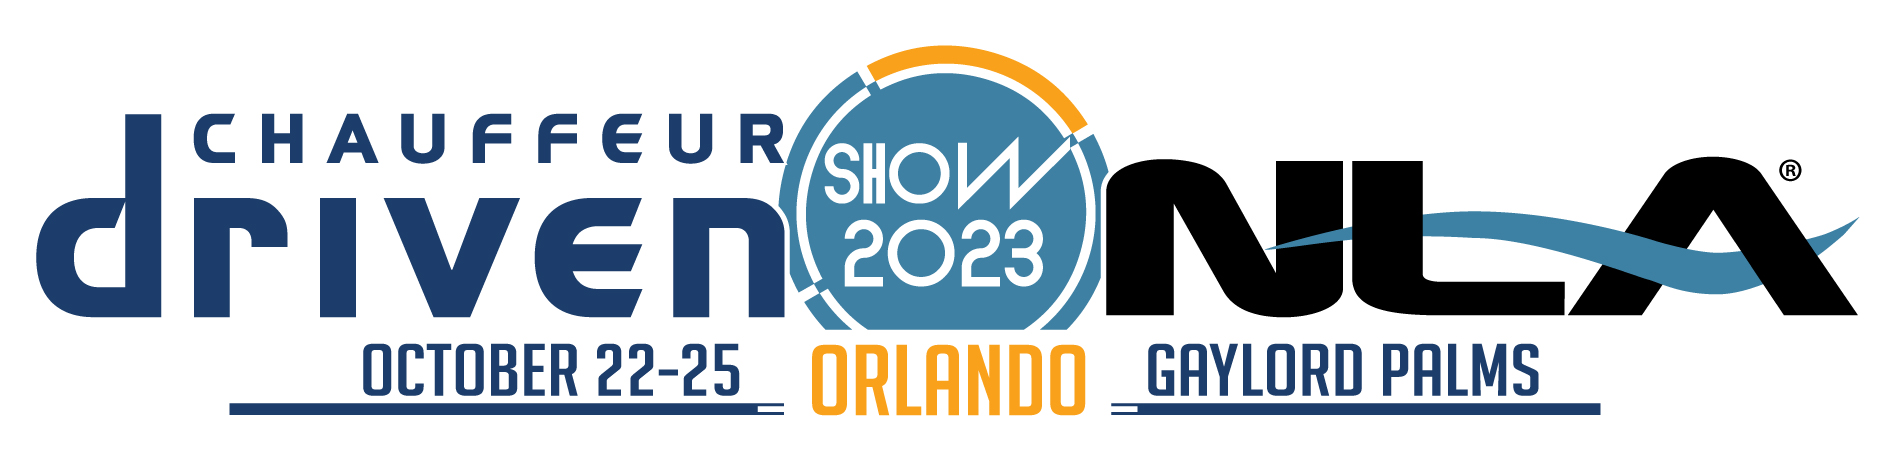 CD/NLA Show 2023 Orlando